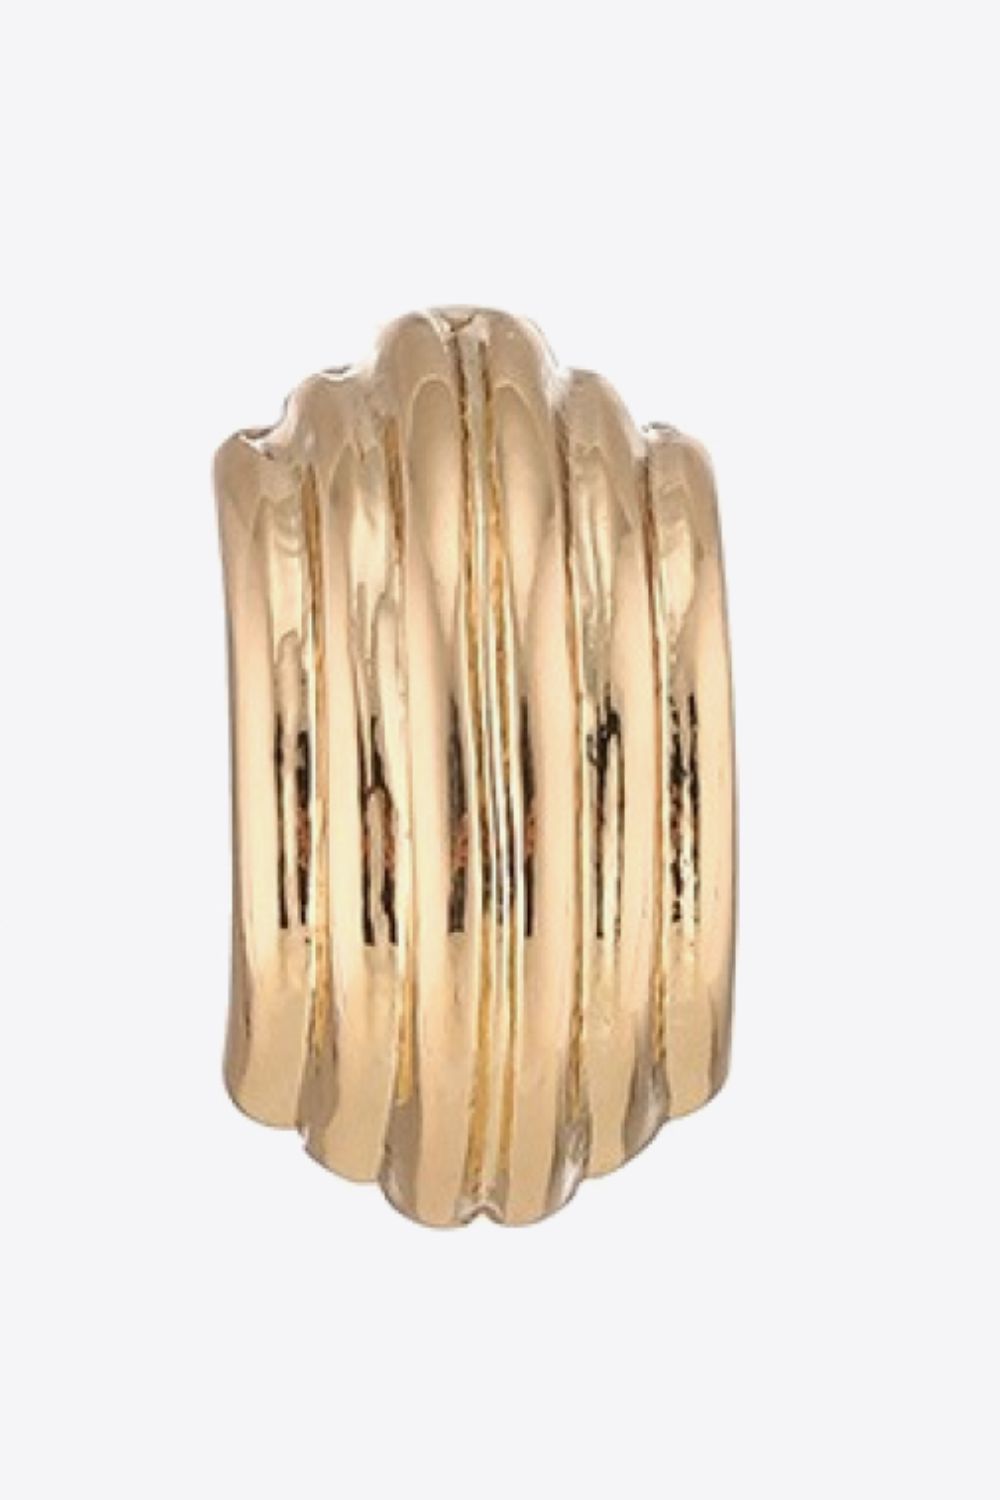 Ribbed Copper Earrings - Earrings - FITGGINS